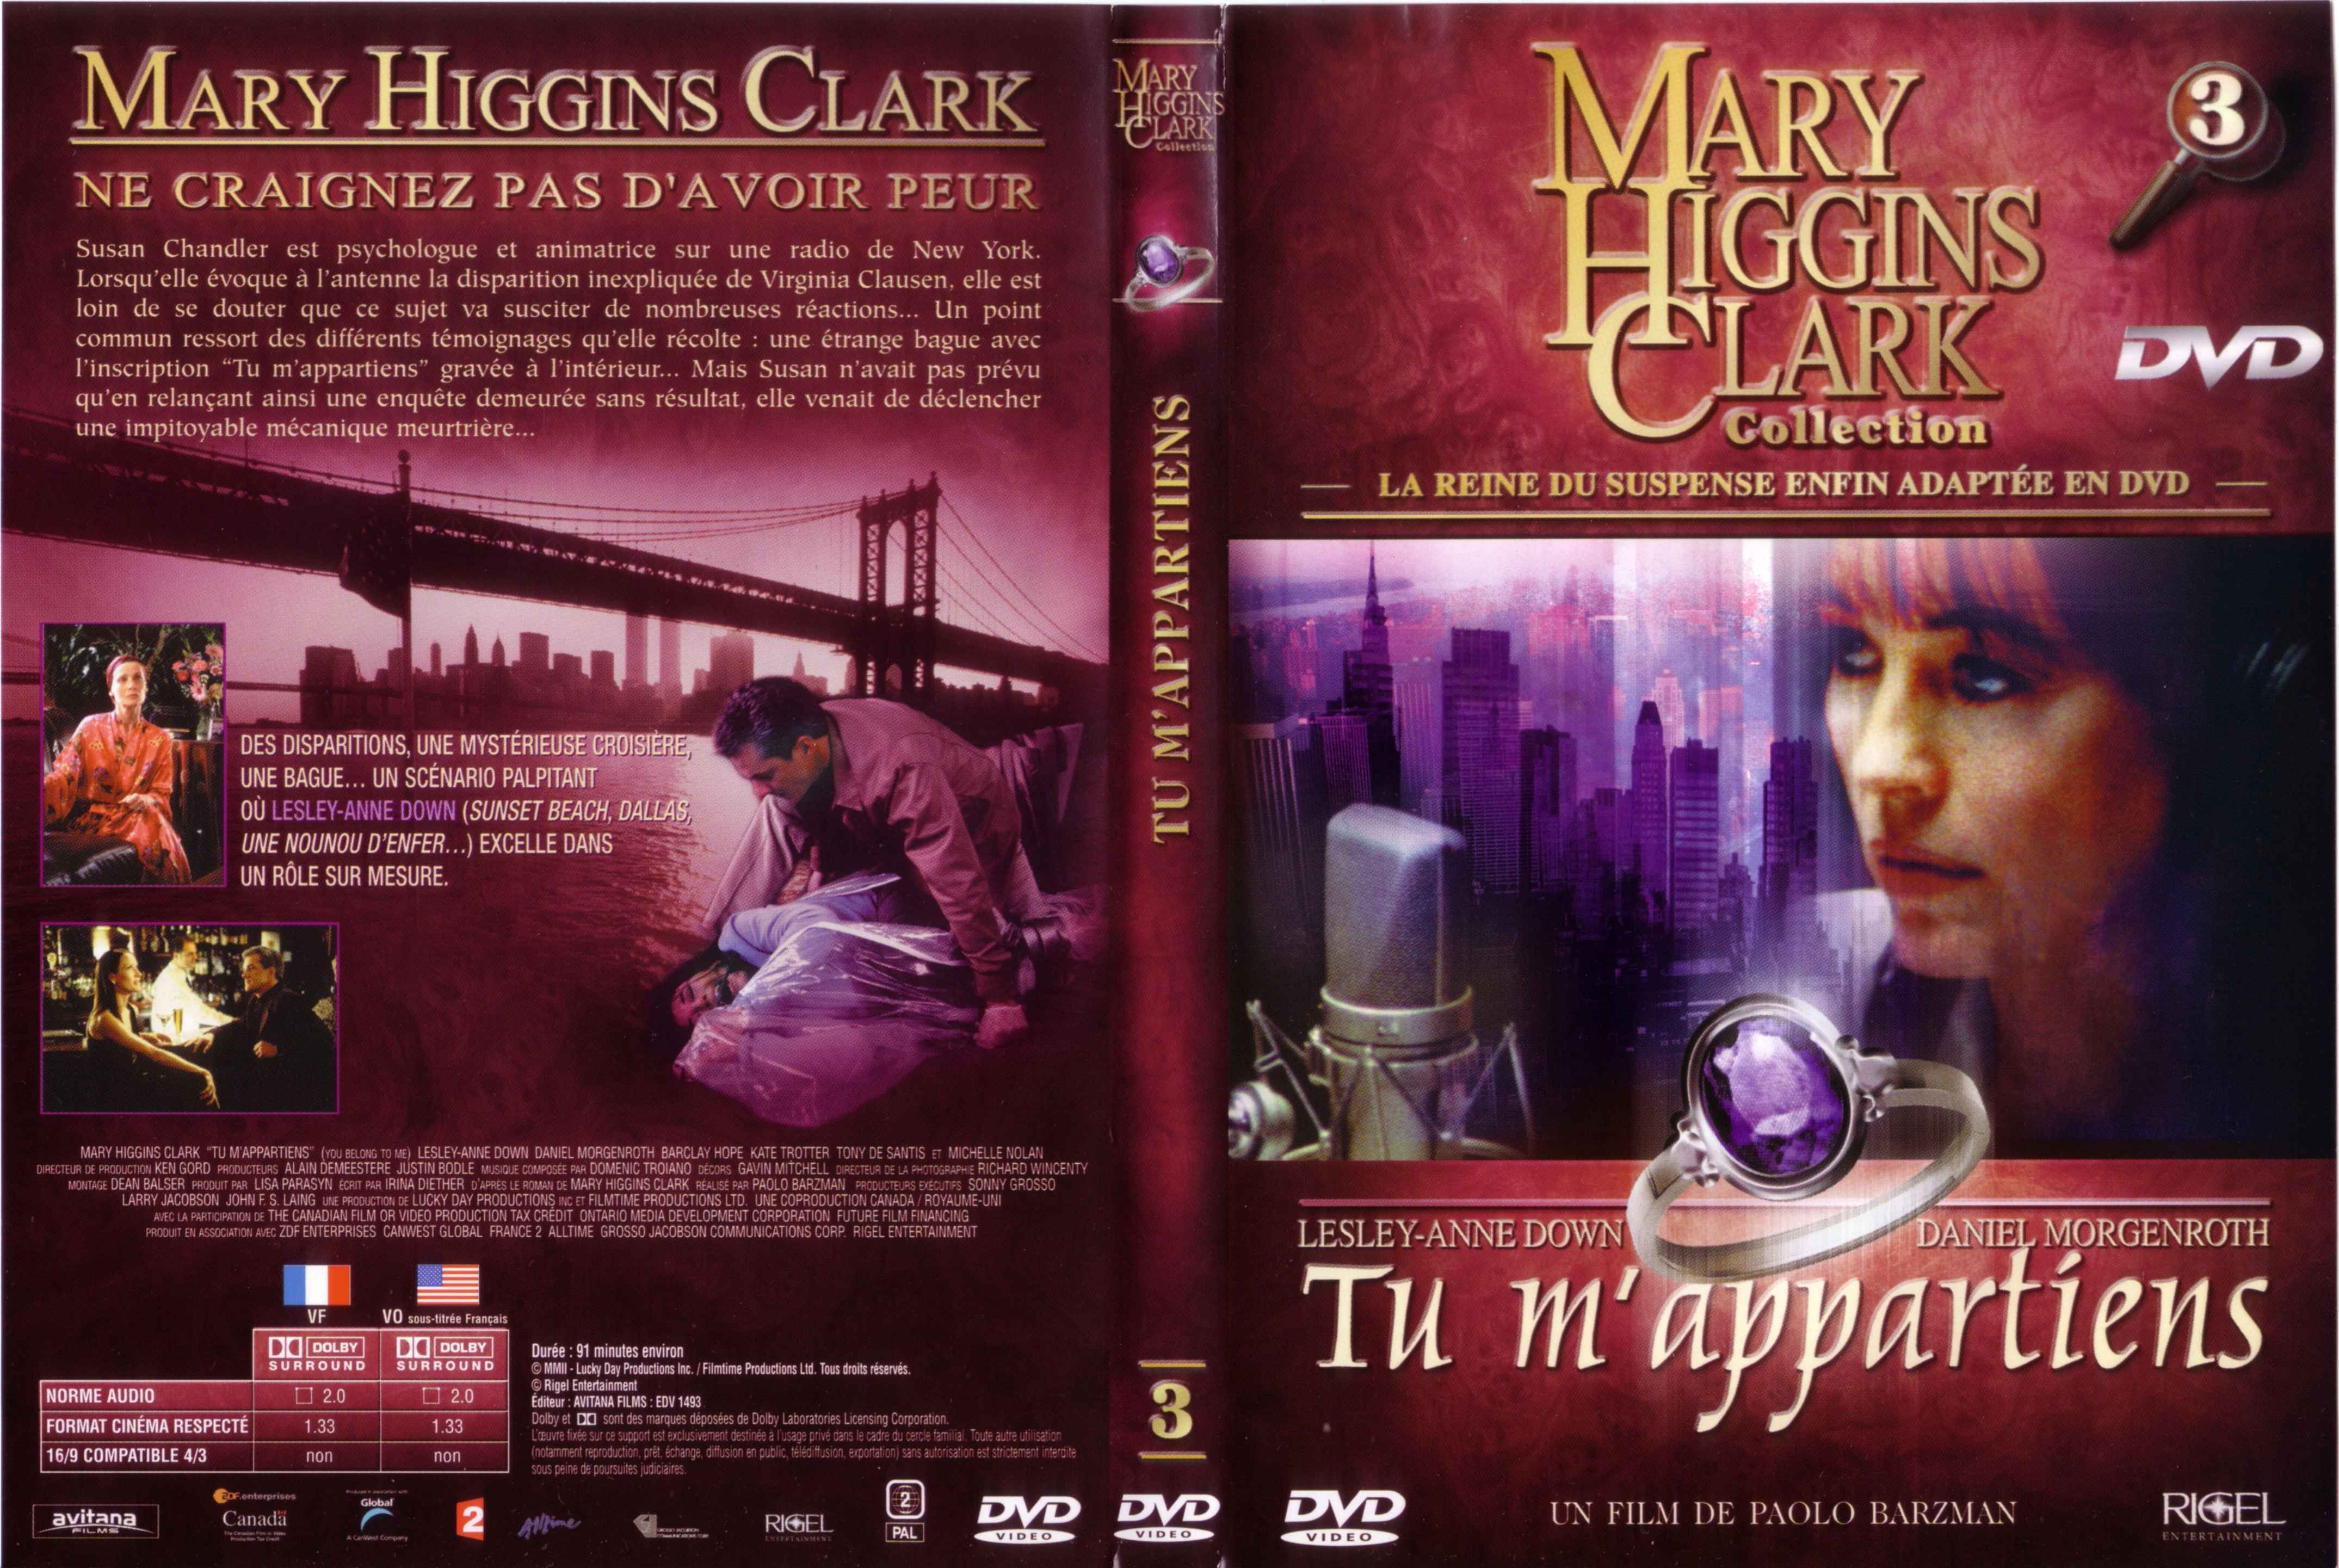 Jaquette DVD Mary Higgins Clark vol 03 - Tu m